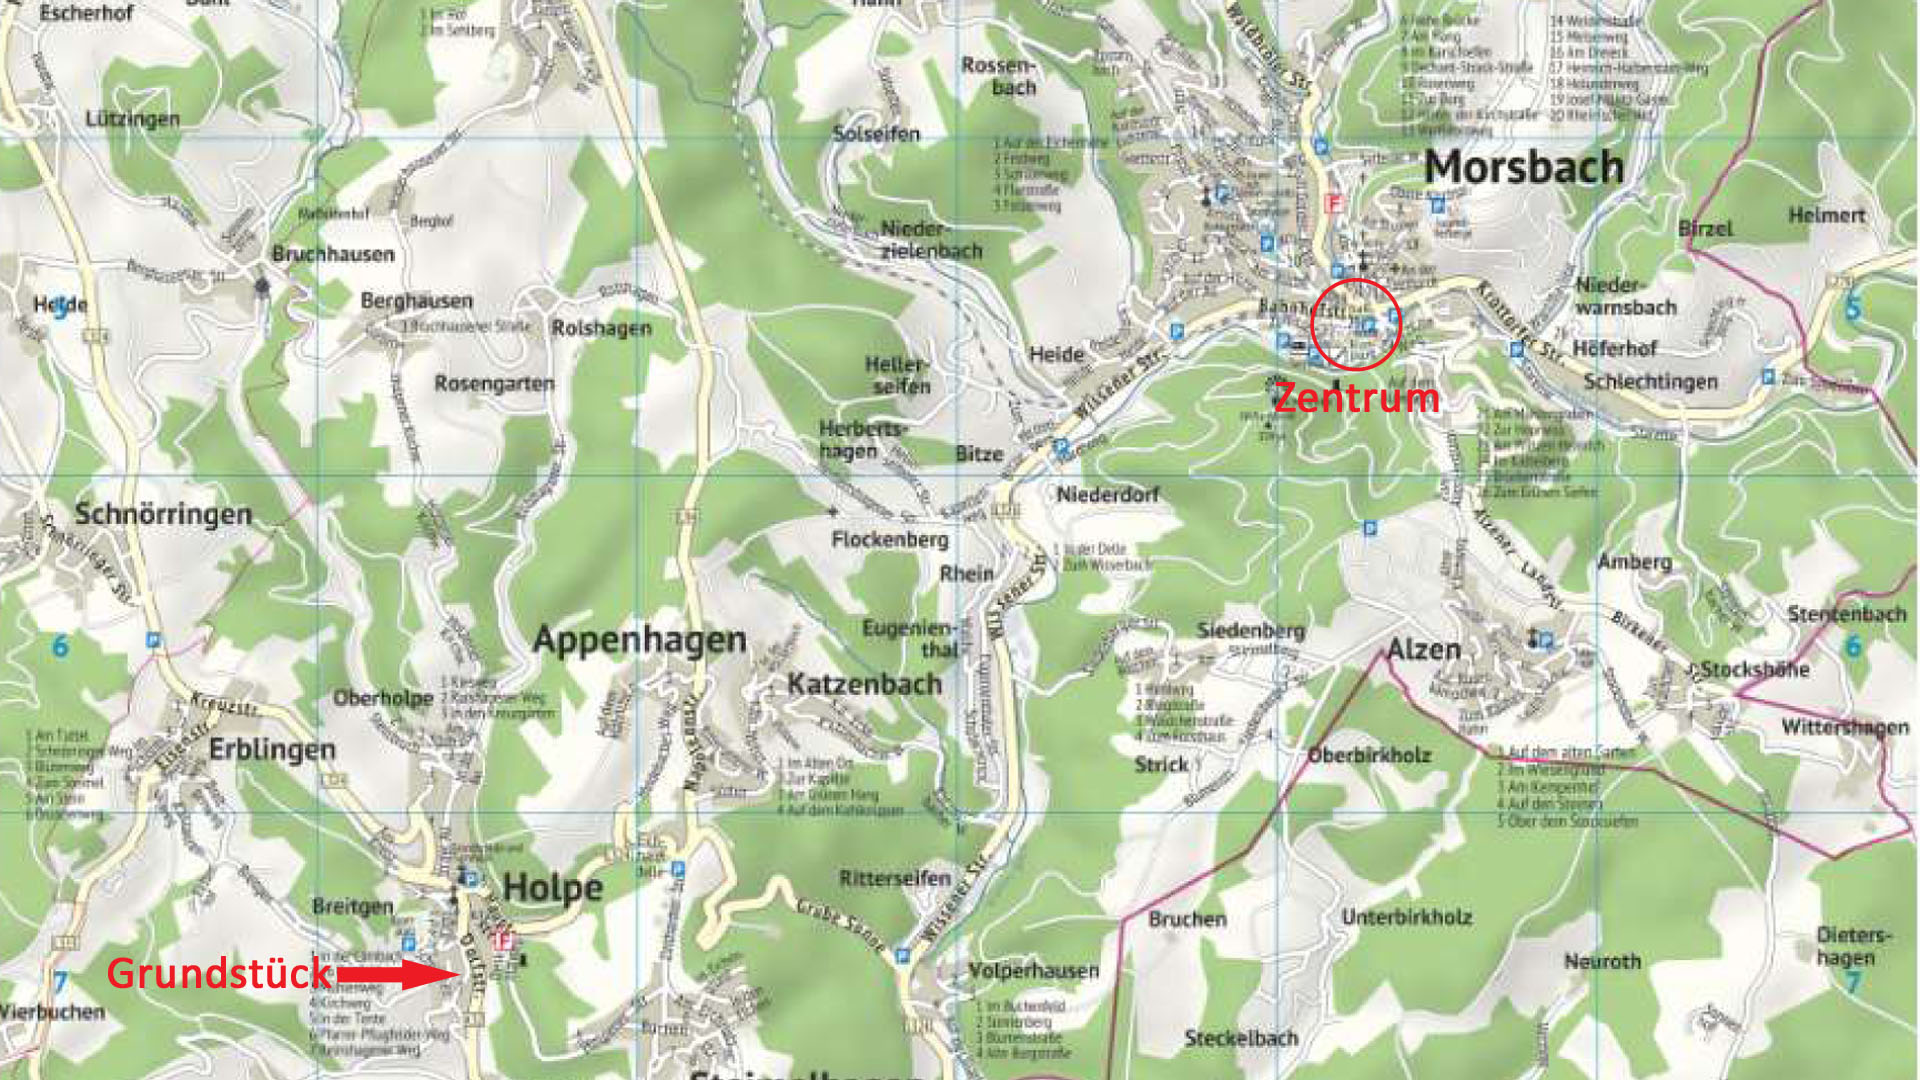 Morsbach-Holpe: Preiswertes, sofort bebaubares Baugrundstück in herrlicher Naturlage, Ortskarte